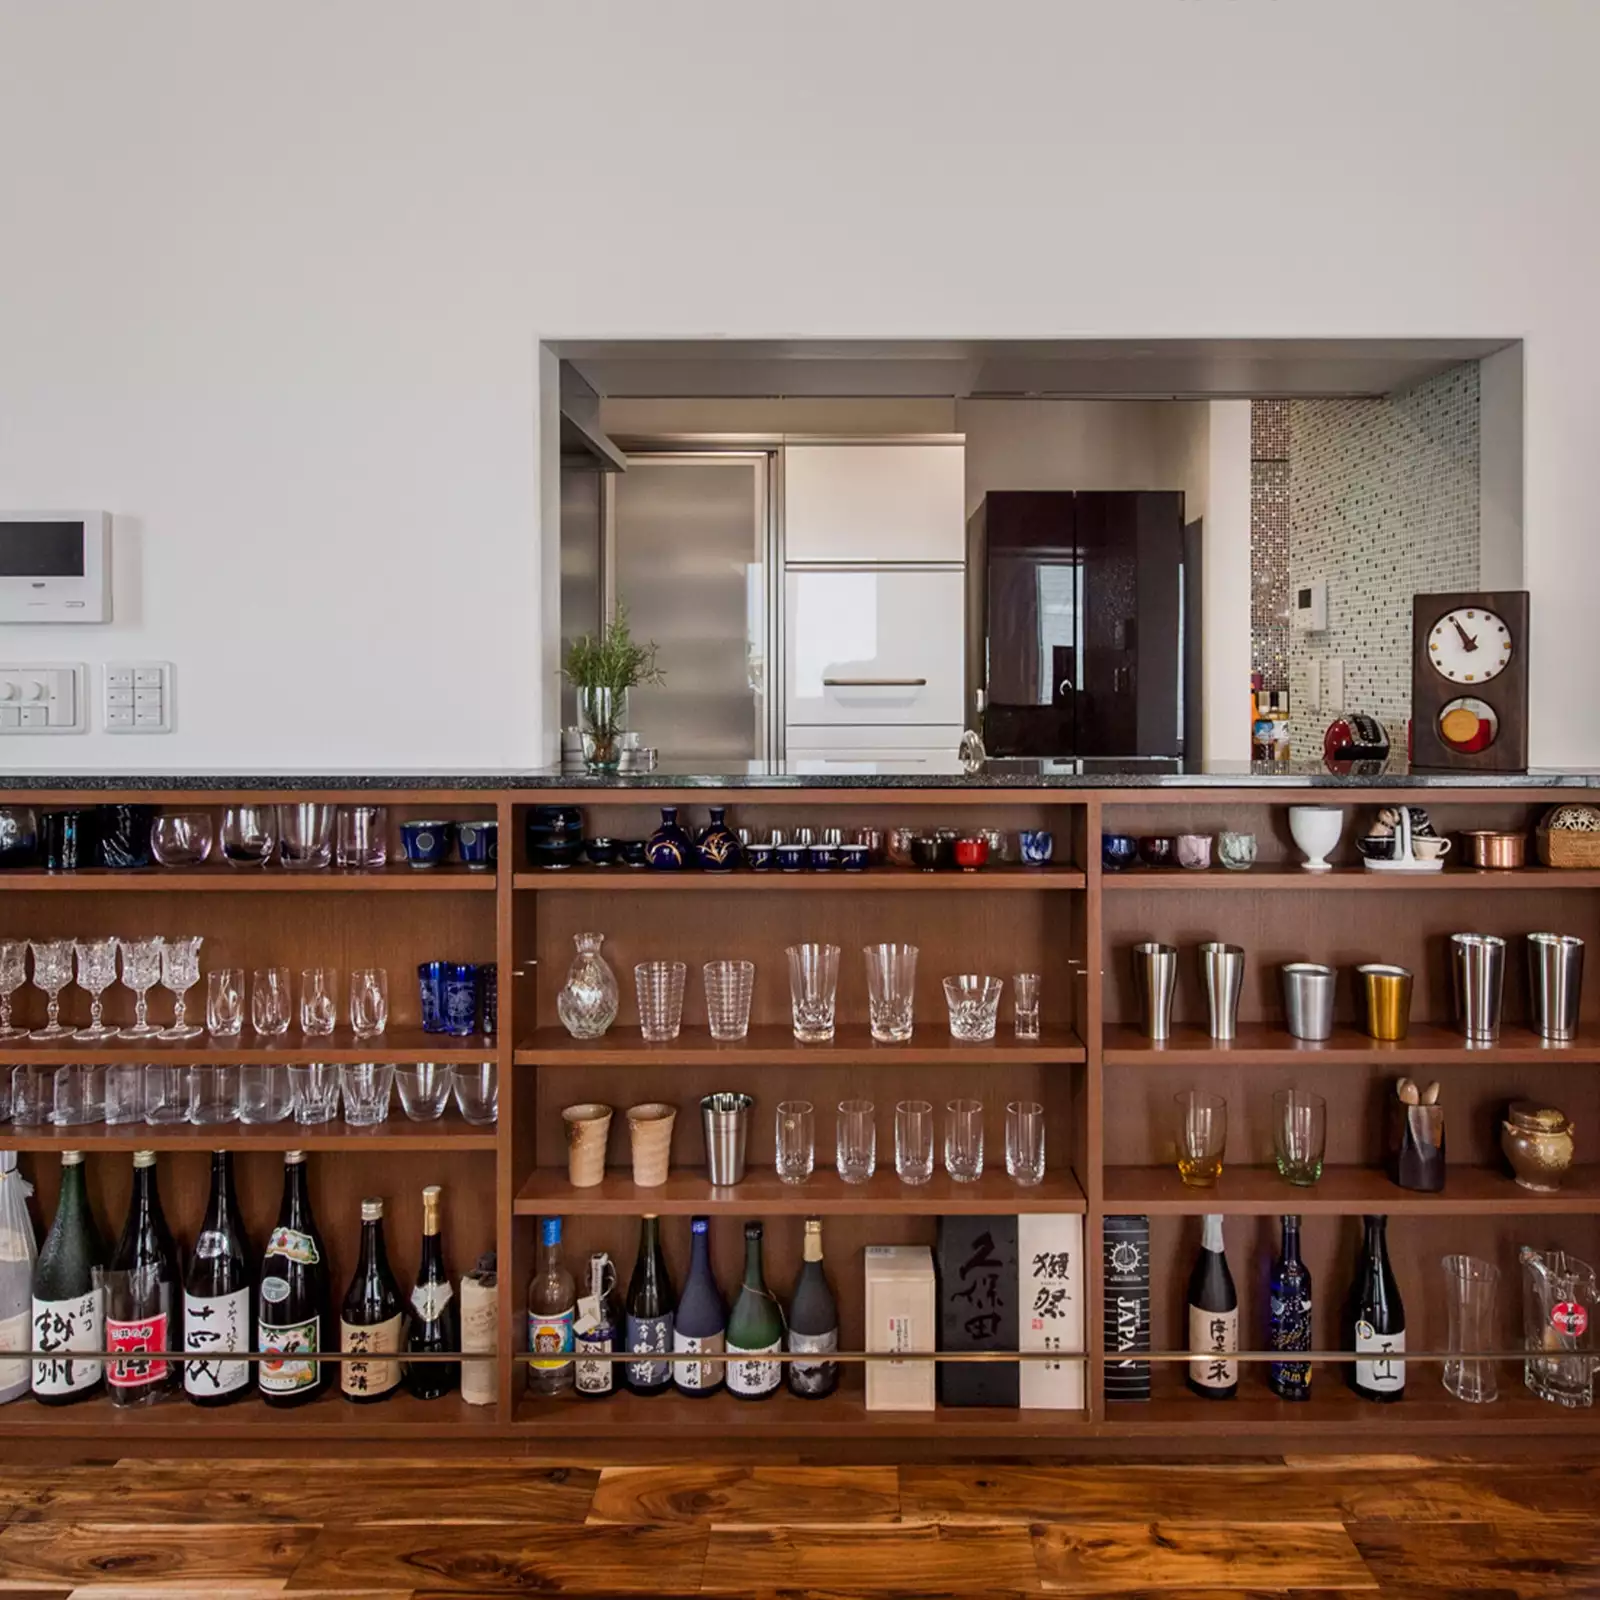 R+houseの物件のオープン棚の写真です。キッチンとつながる窓の下に作られた棚。酒瓶と酒器のコレクションが並ぶ。